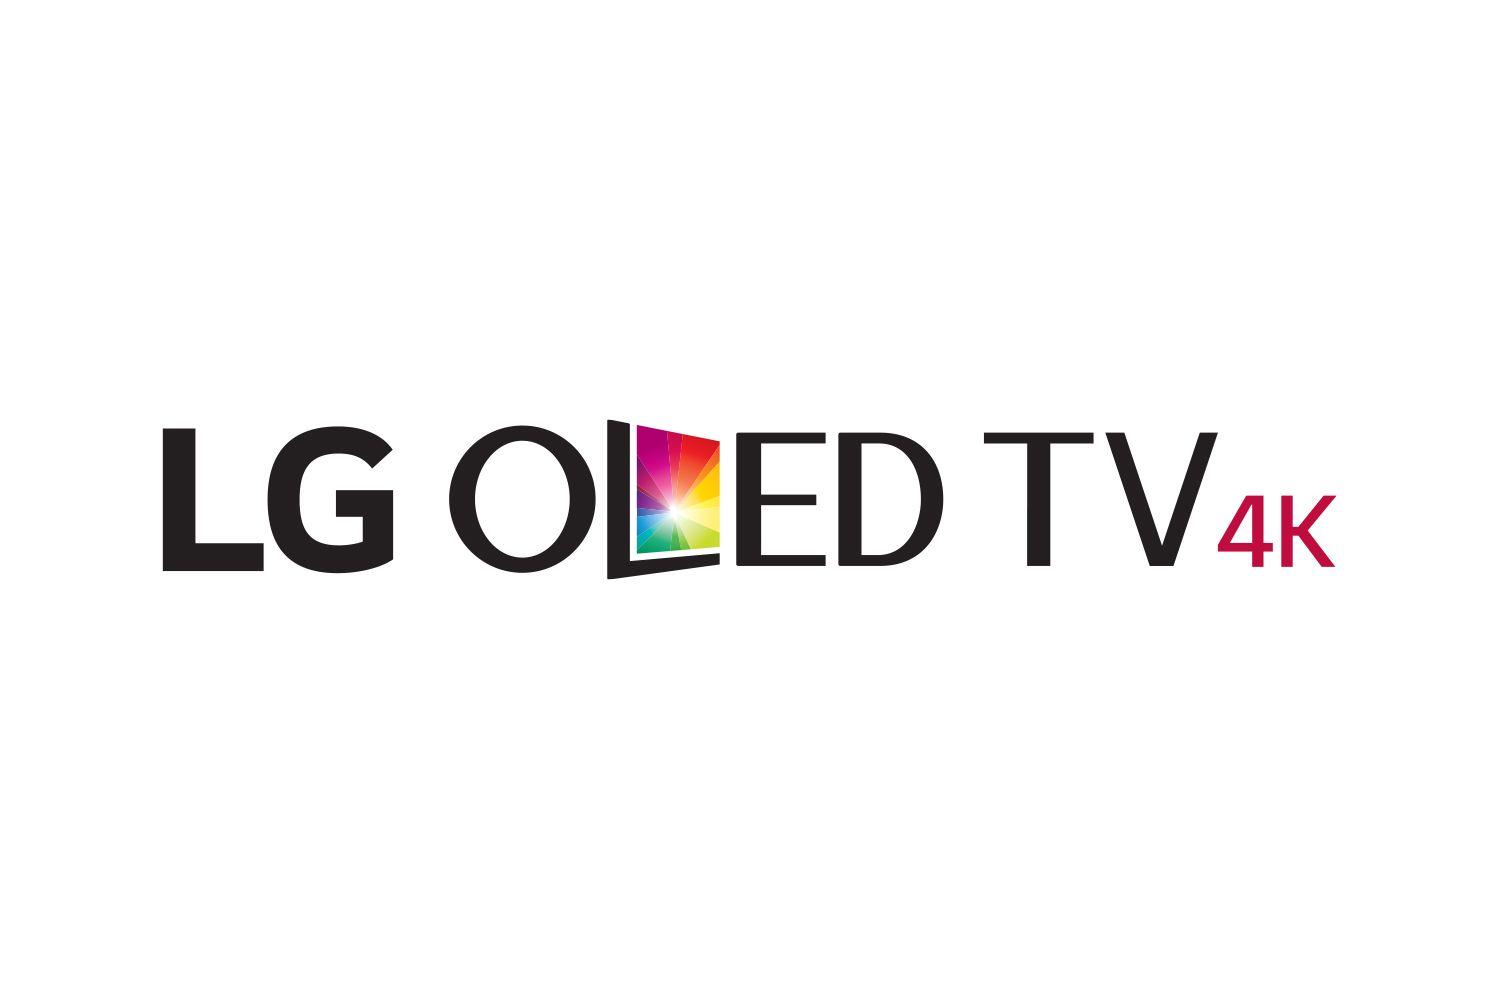 Smart TV Logo - Smart LED TV LOGO Free Download - Soft4Led - Smart Universal Board ...